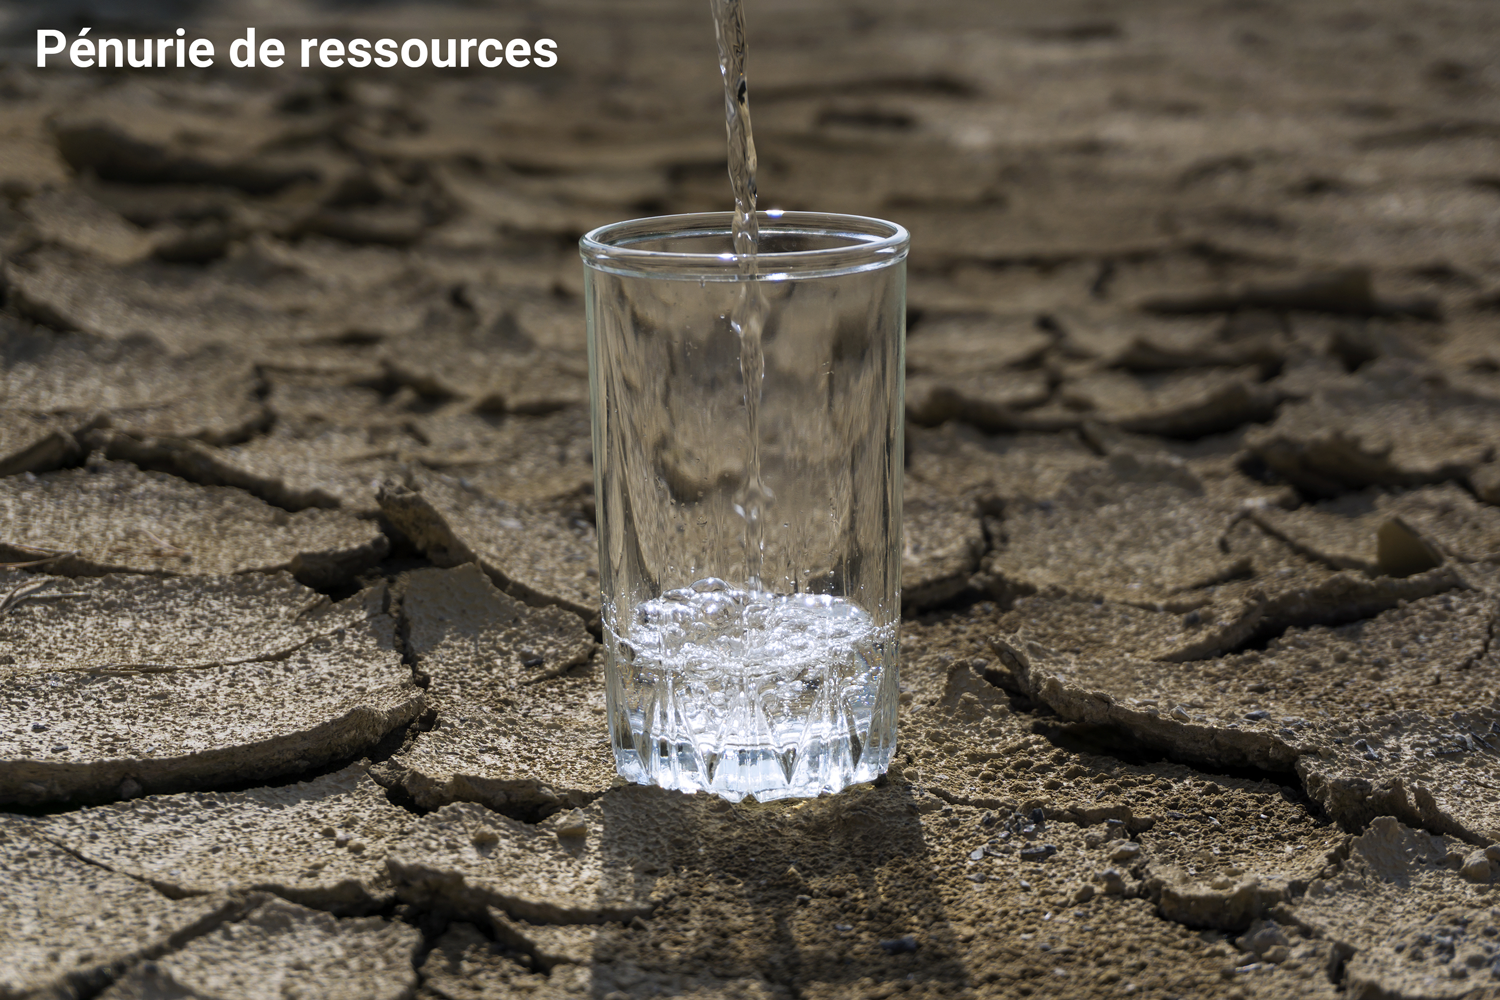 Aujourd'hui, l'agriculture mondiale a déjà besoin de 70 % de l'eau douce prélevée. Le grand défi consiste à produire plus avec moins. (Image: Adobe Stock)